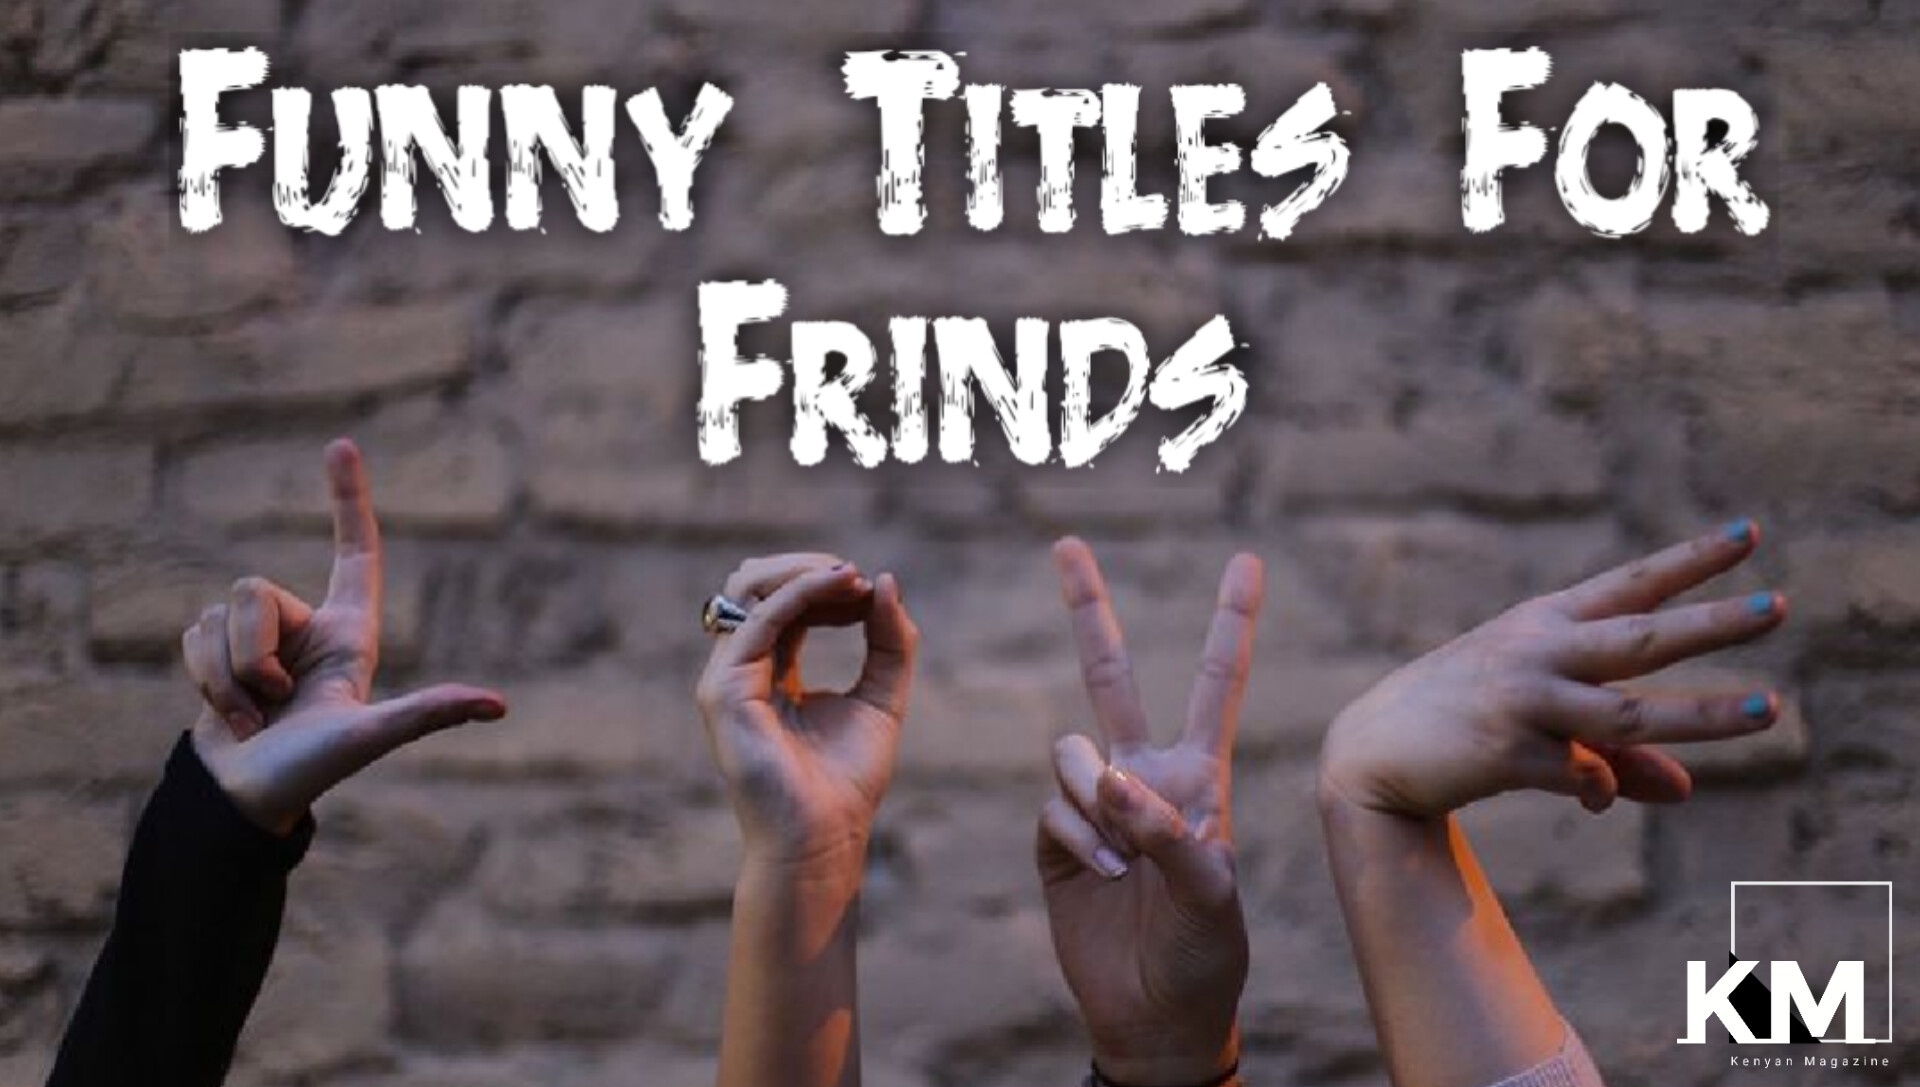 50+ Funniest Titles For Friends (Girls, Boys & Group) - Kenyan Magazine